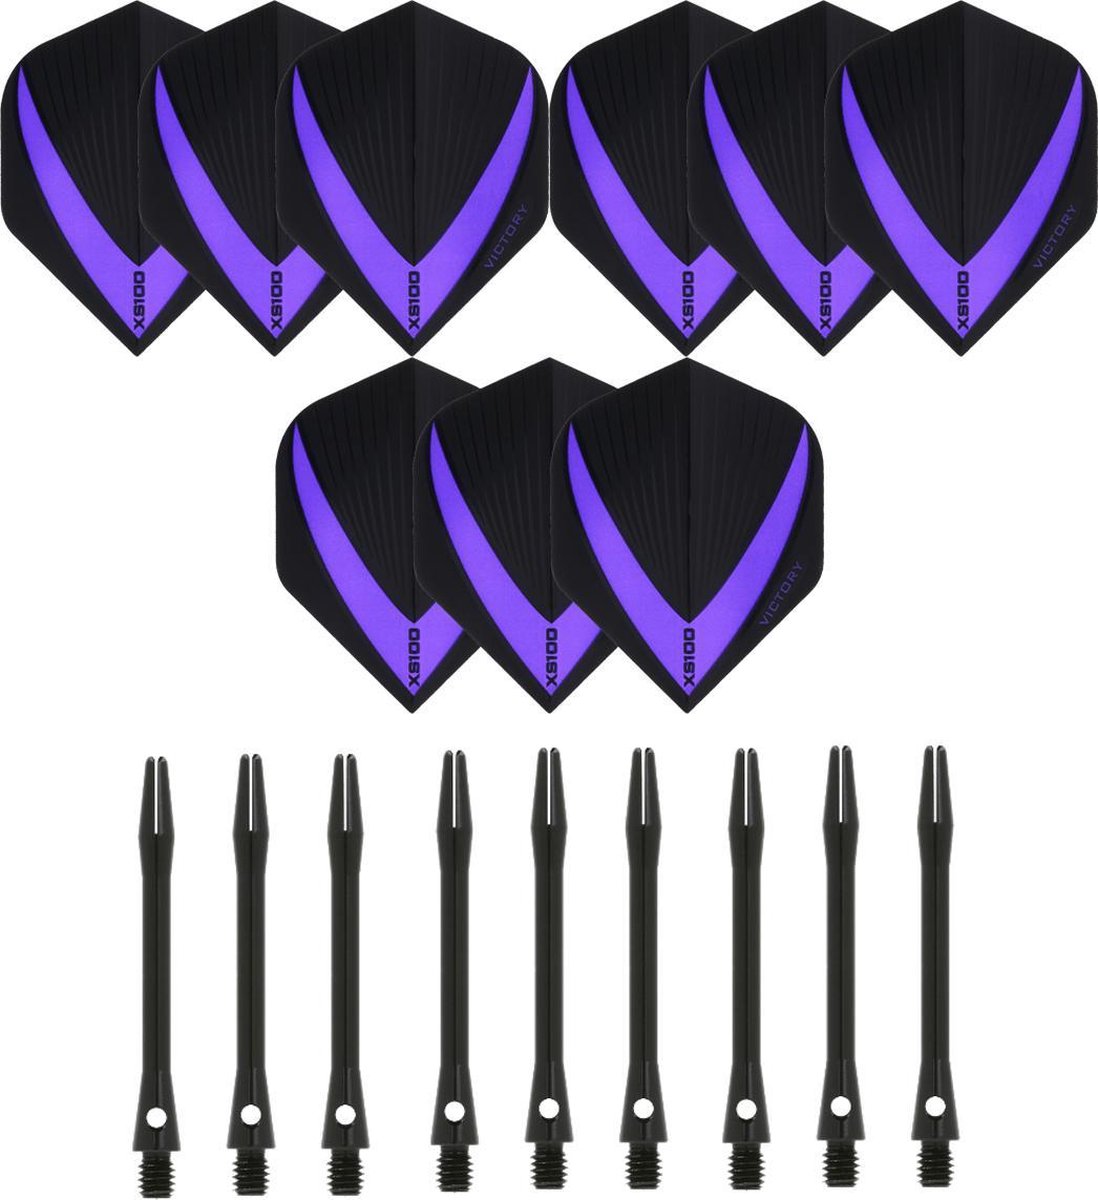 3 sets (9 stuks) Super Sterke - Paars - Vista-X - darts flights - inclusief 3 sets (9 stuks) - medium - Aluminium - zwart - darts shafts